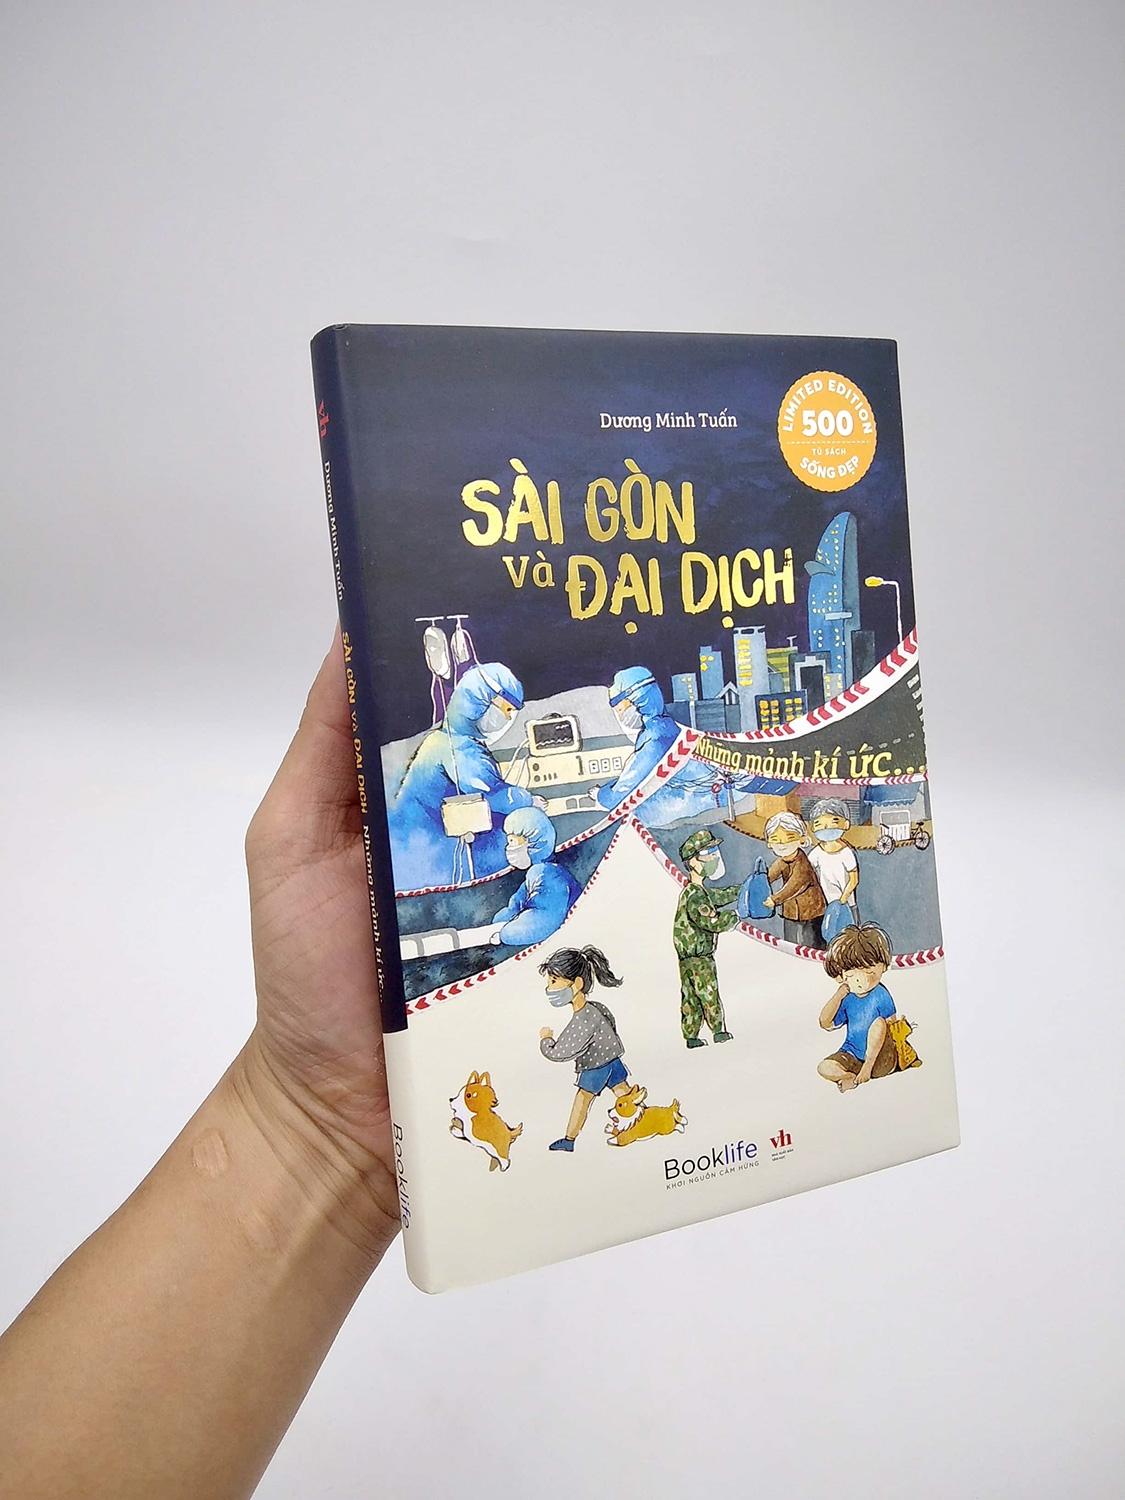 Sài Gòn Và Đại Dịch - Những Mảnh Kí Ức (Bìa Cứng)